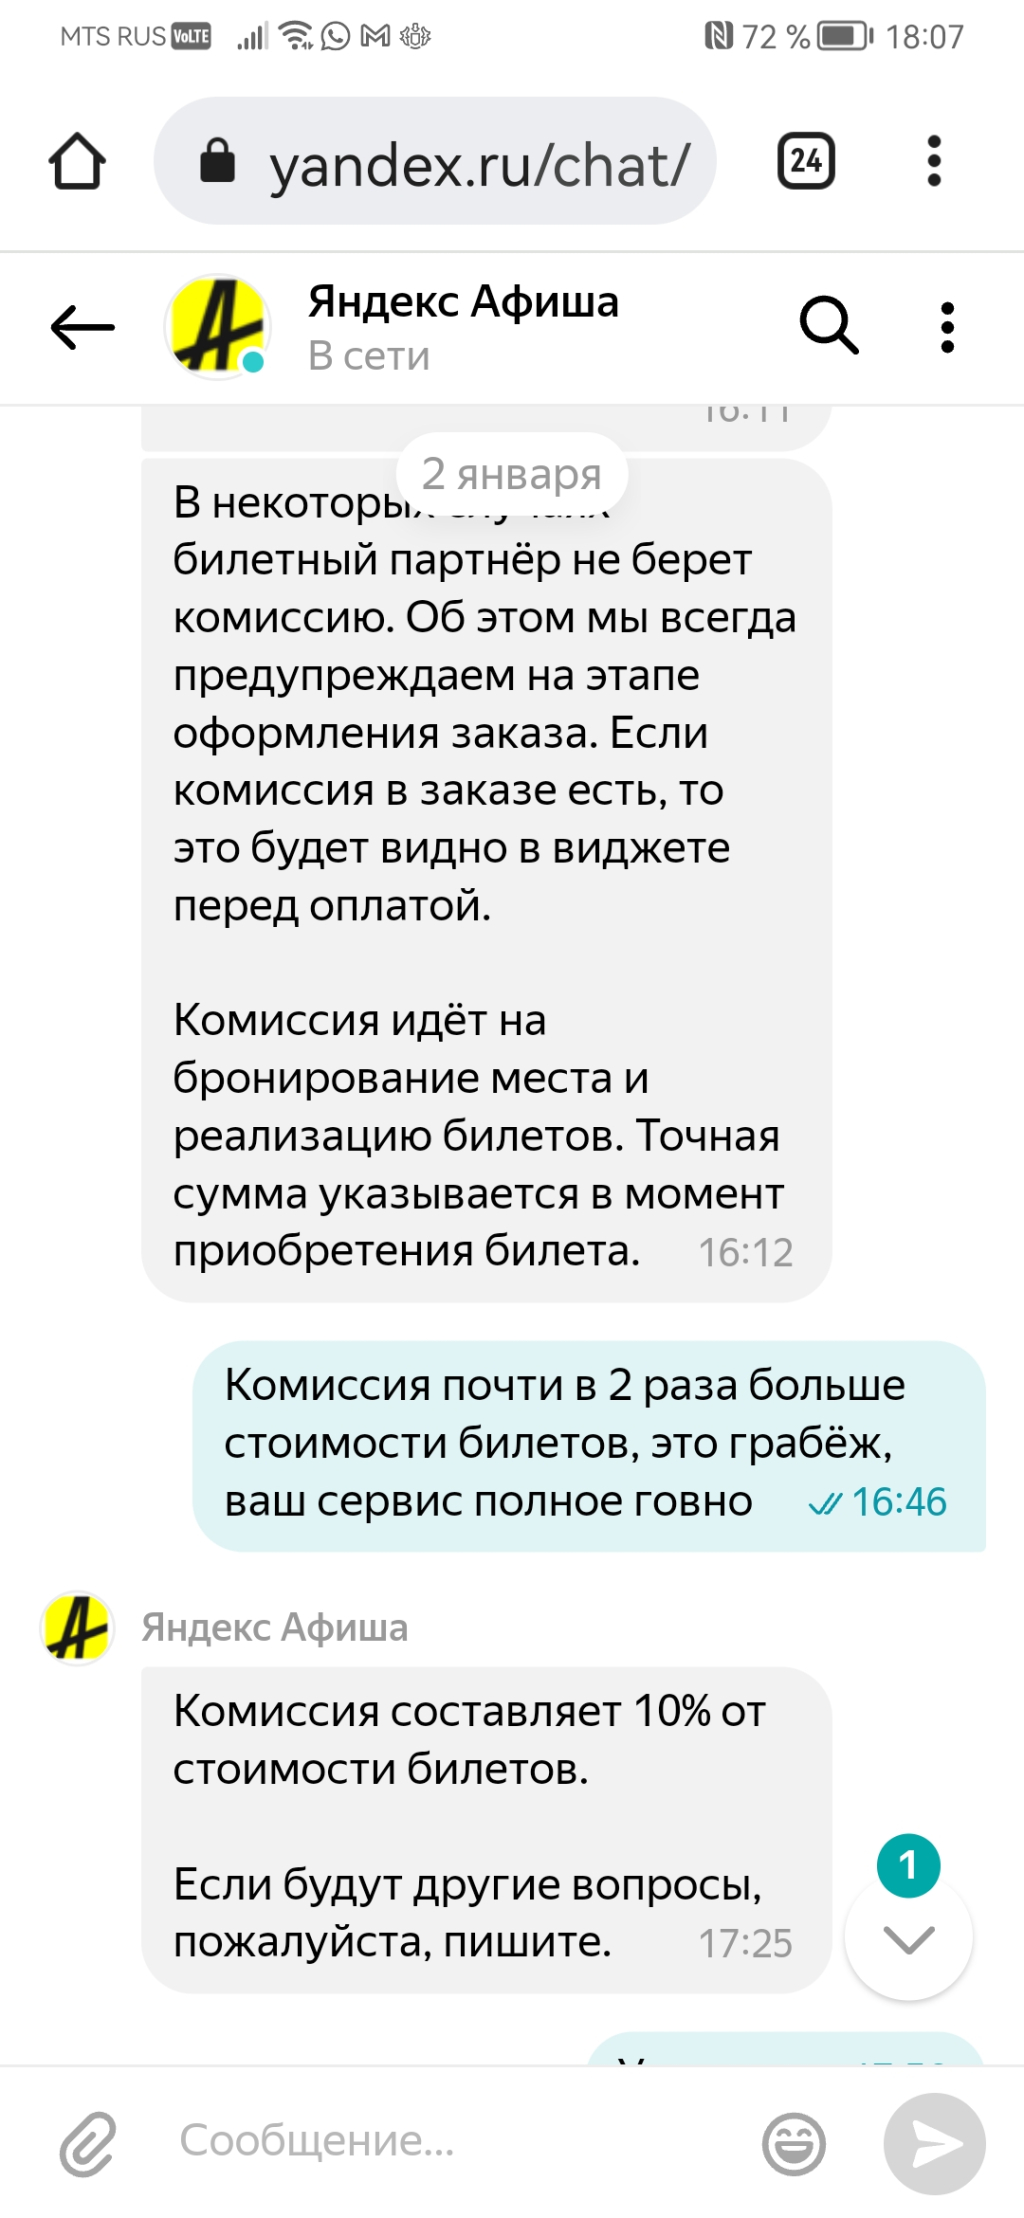 Яндекс Афиша - мошенники и негодяи